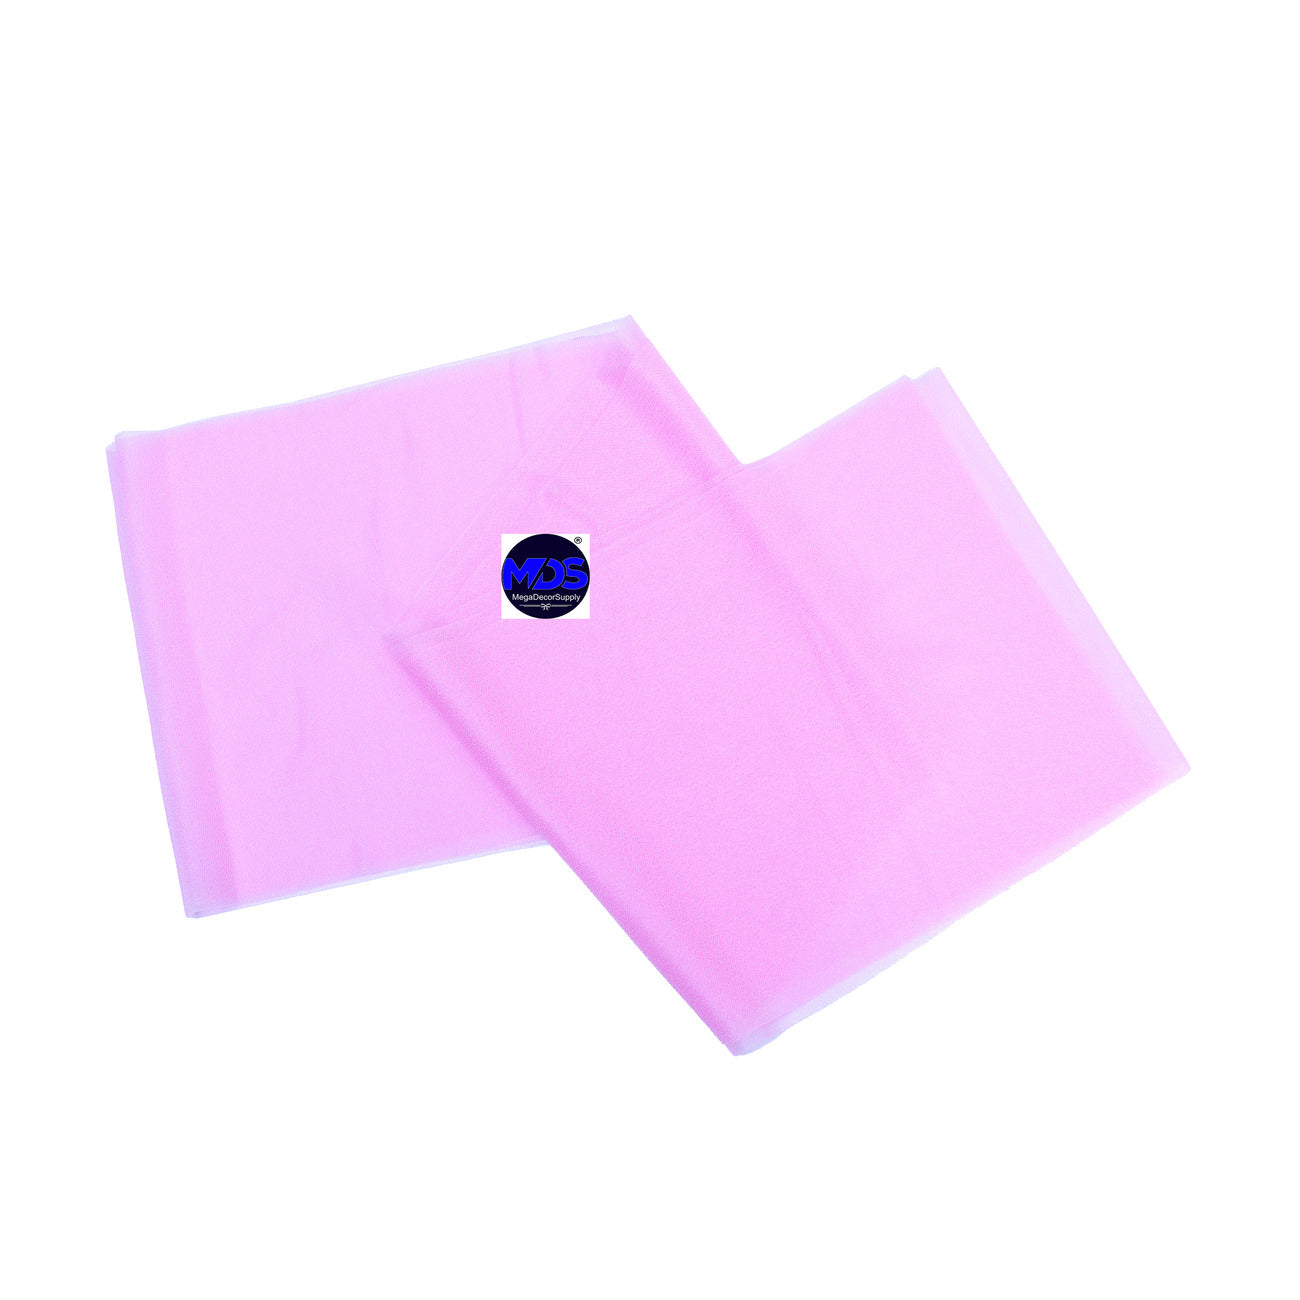 Bubblegum Pink,fc06f106-83cc-45aa-a2dd-abddbf62dce4